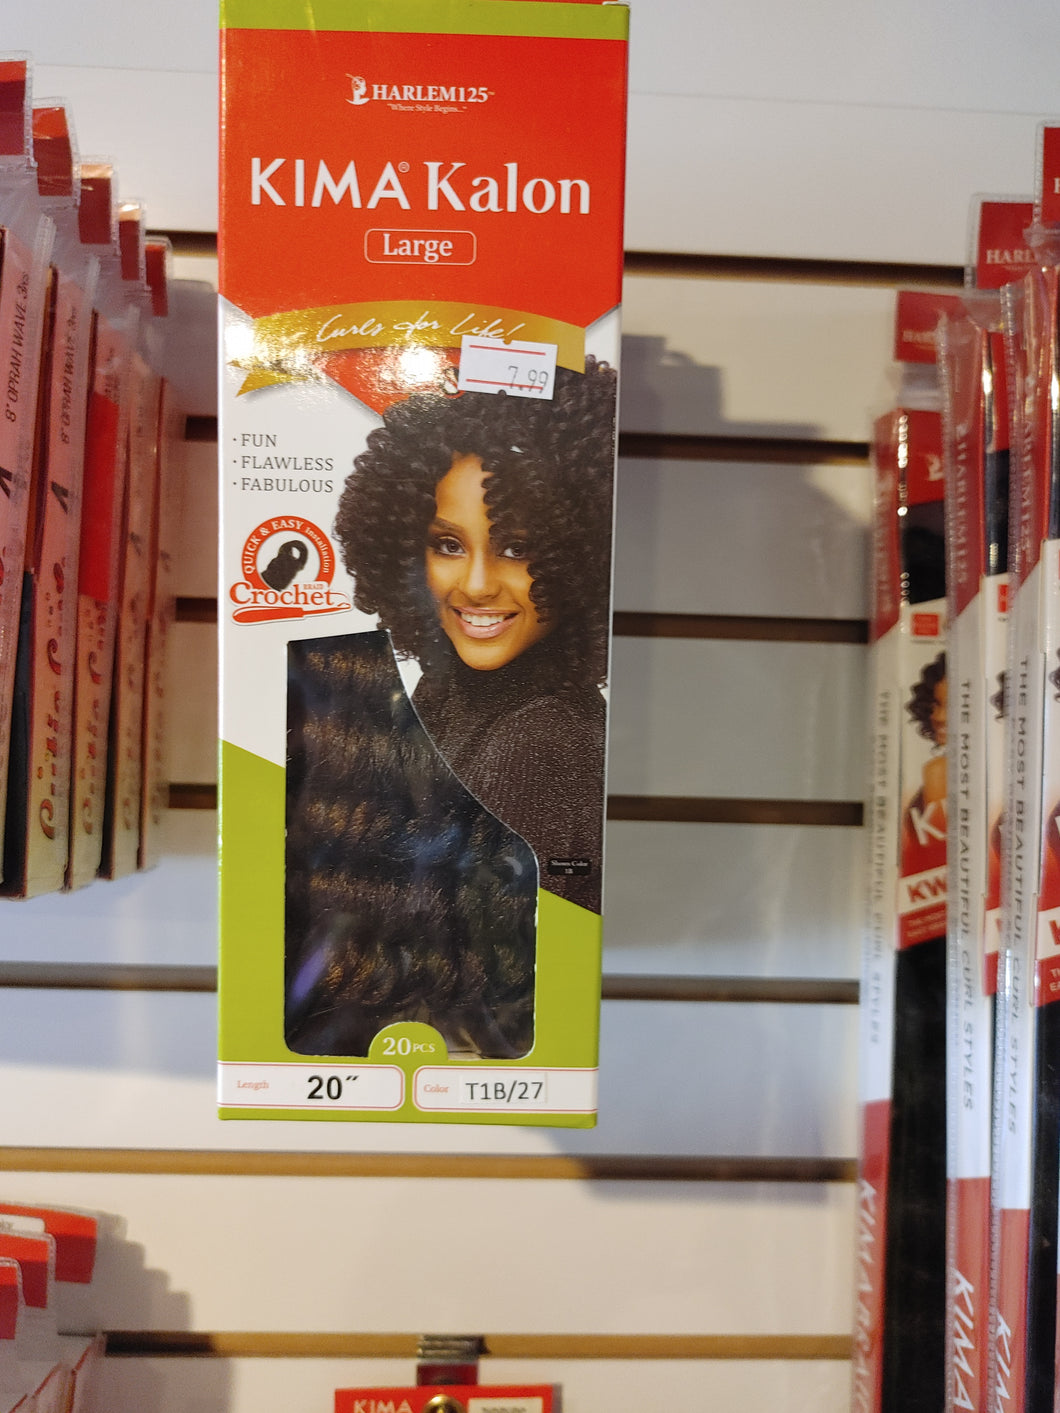 Kima Kalon 'Large'